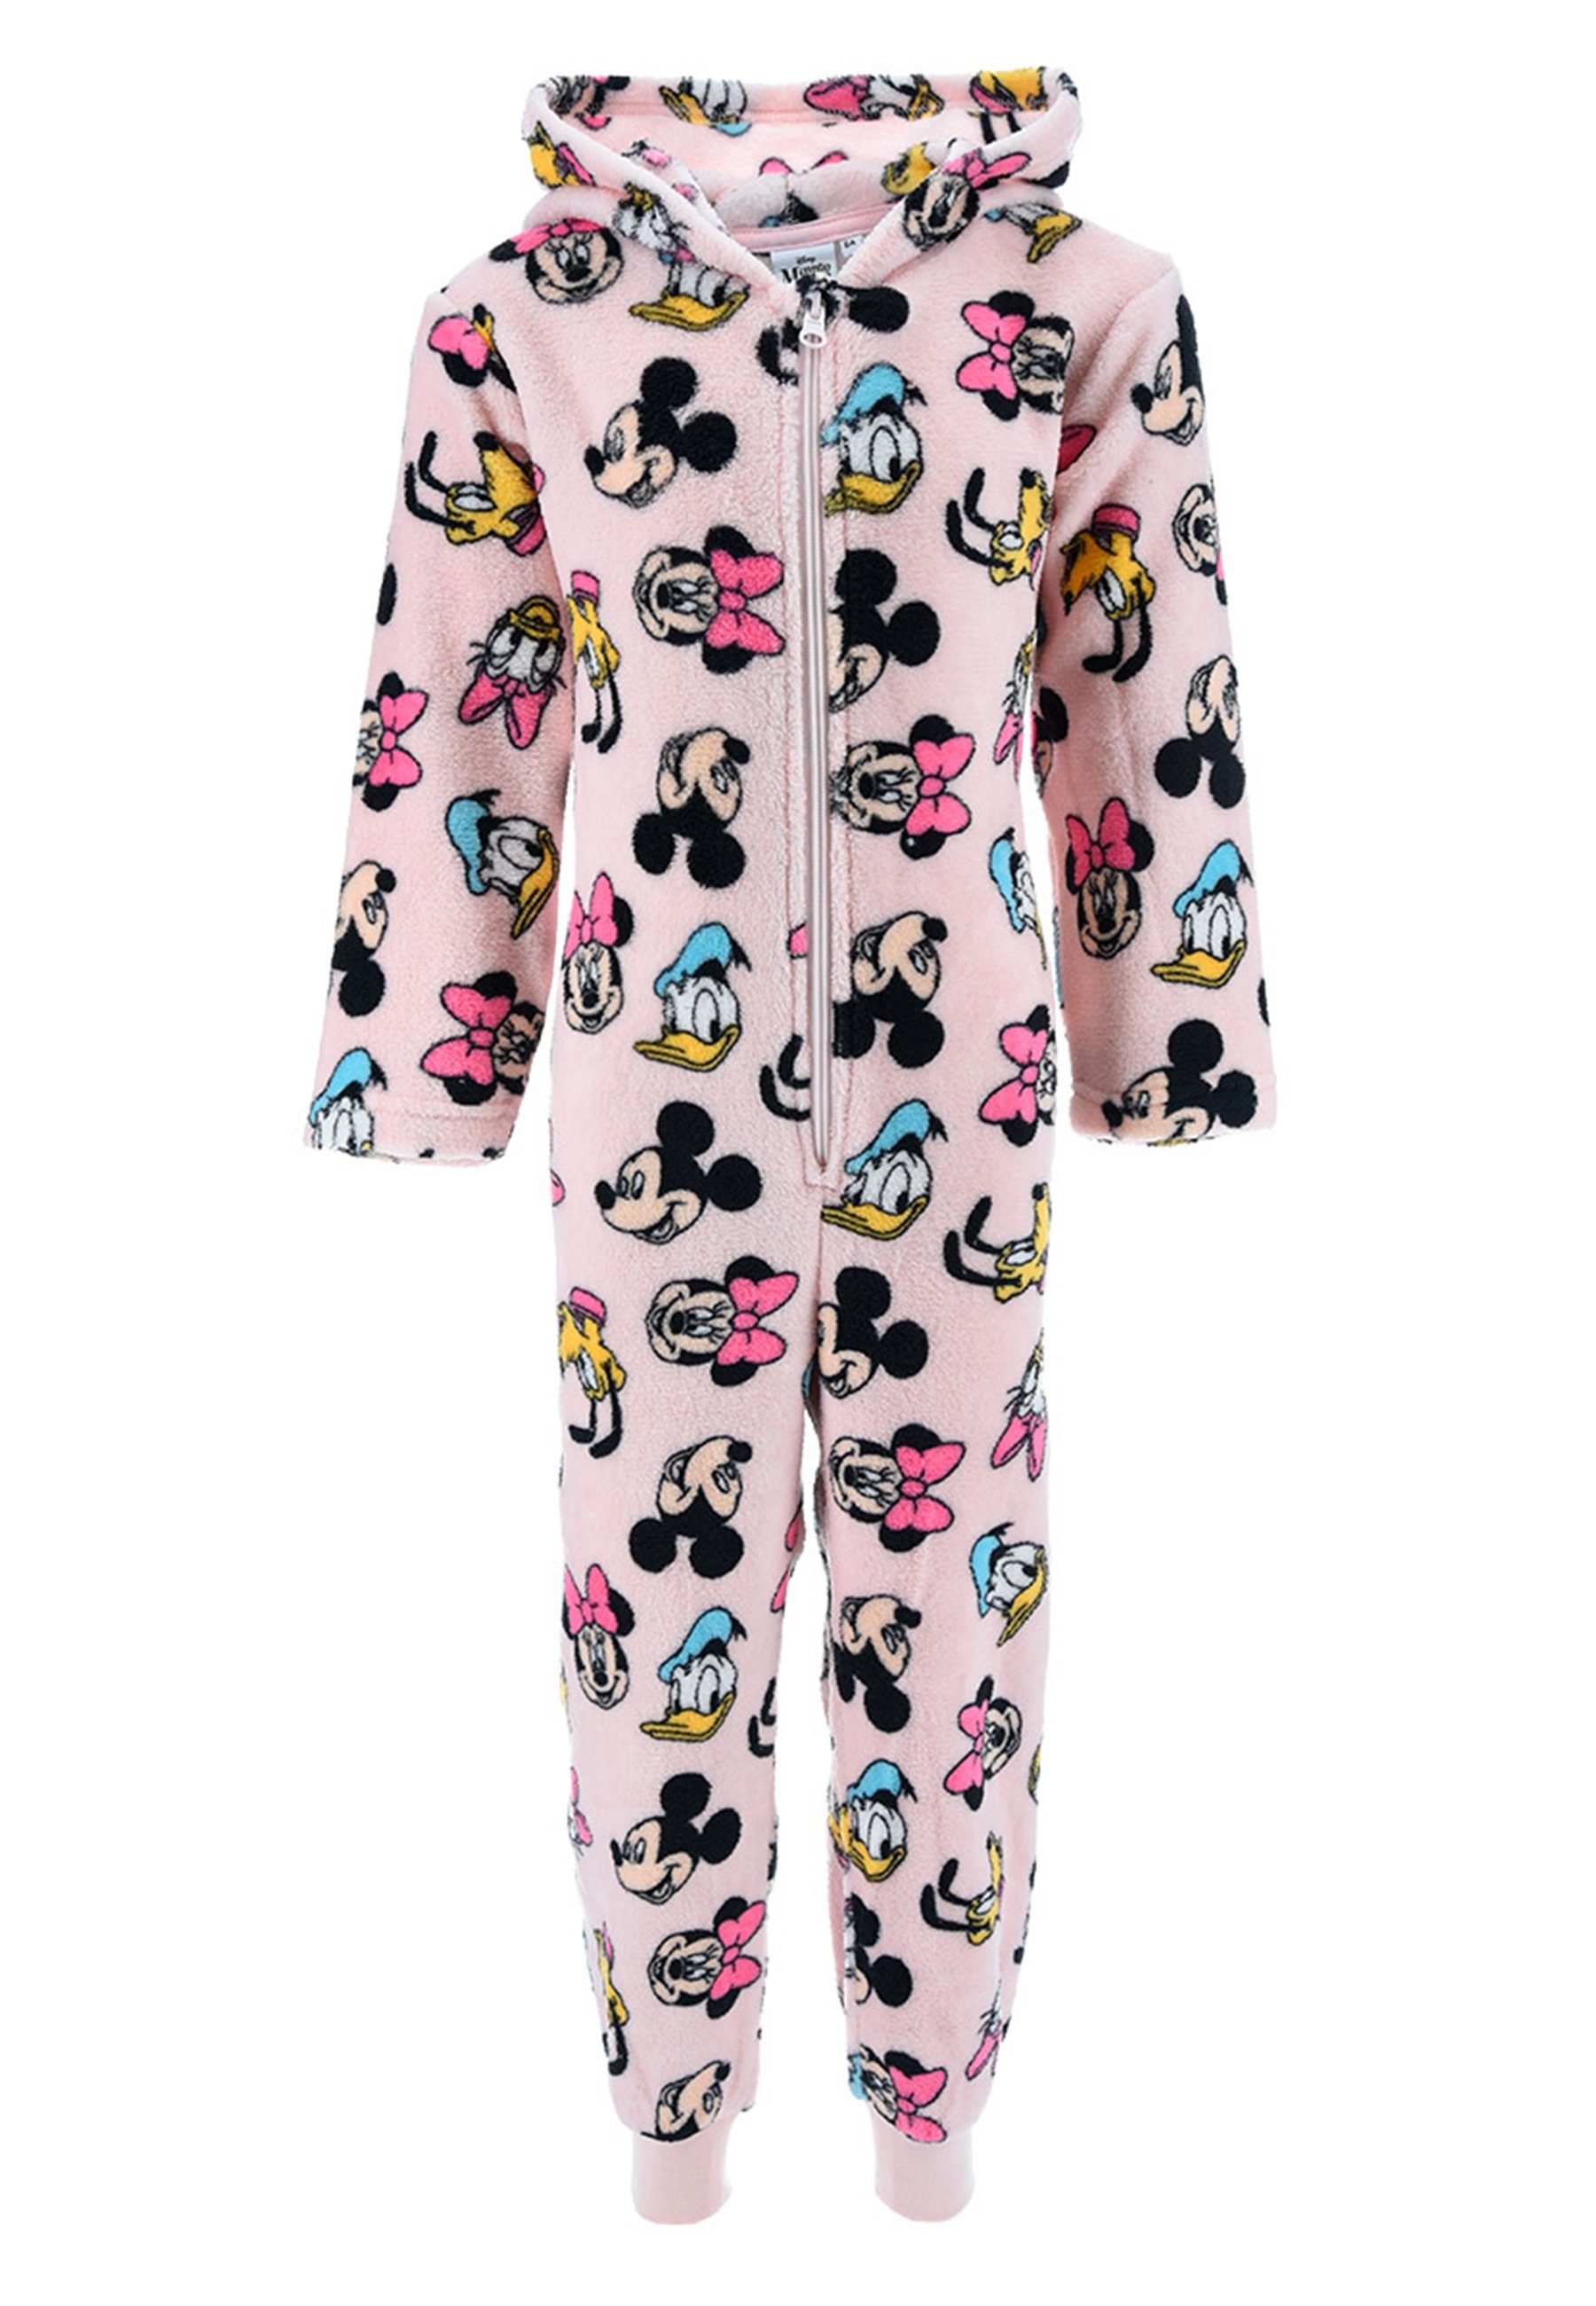 Mouse Schlaf Nachtwäsche langarm Rosa Minnie Schlafanzug Disney Overall Pyjama Mädchen